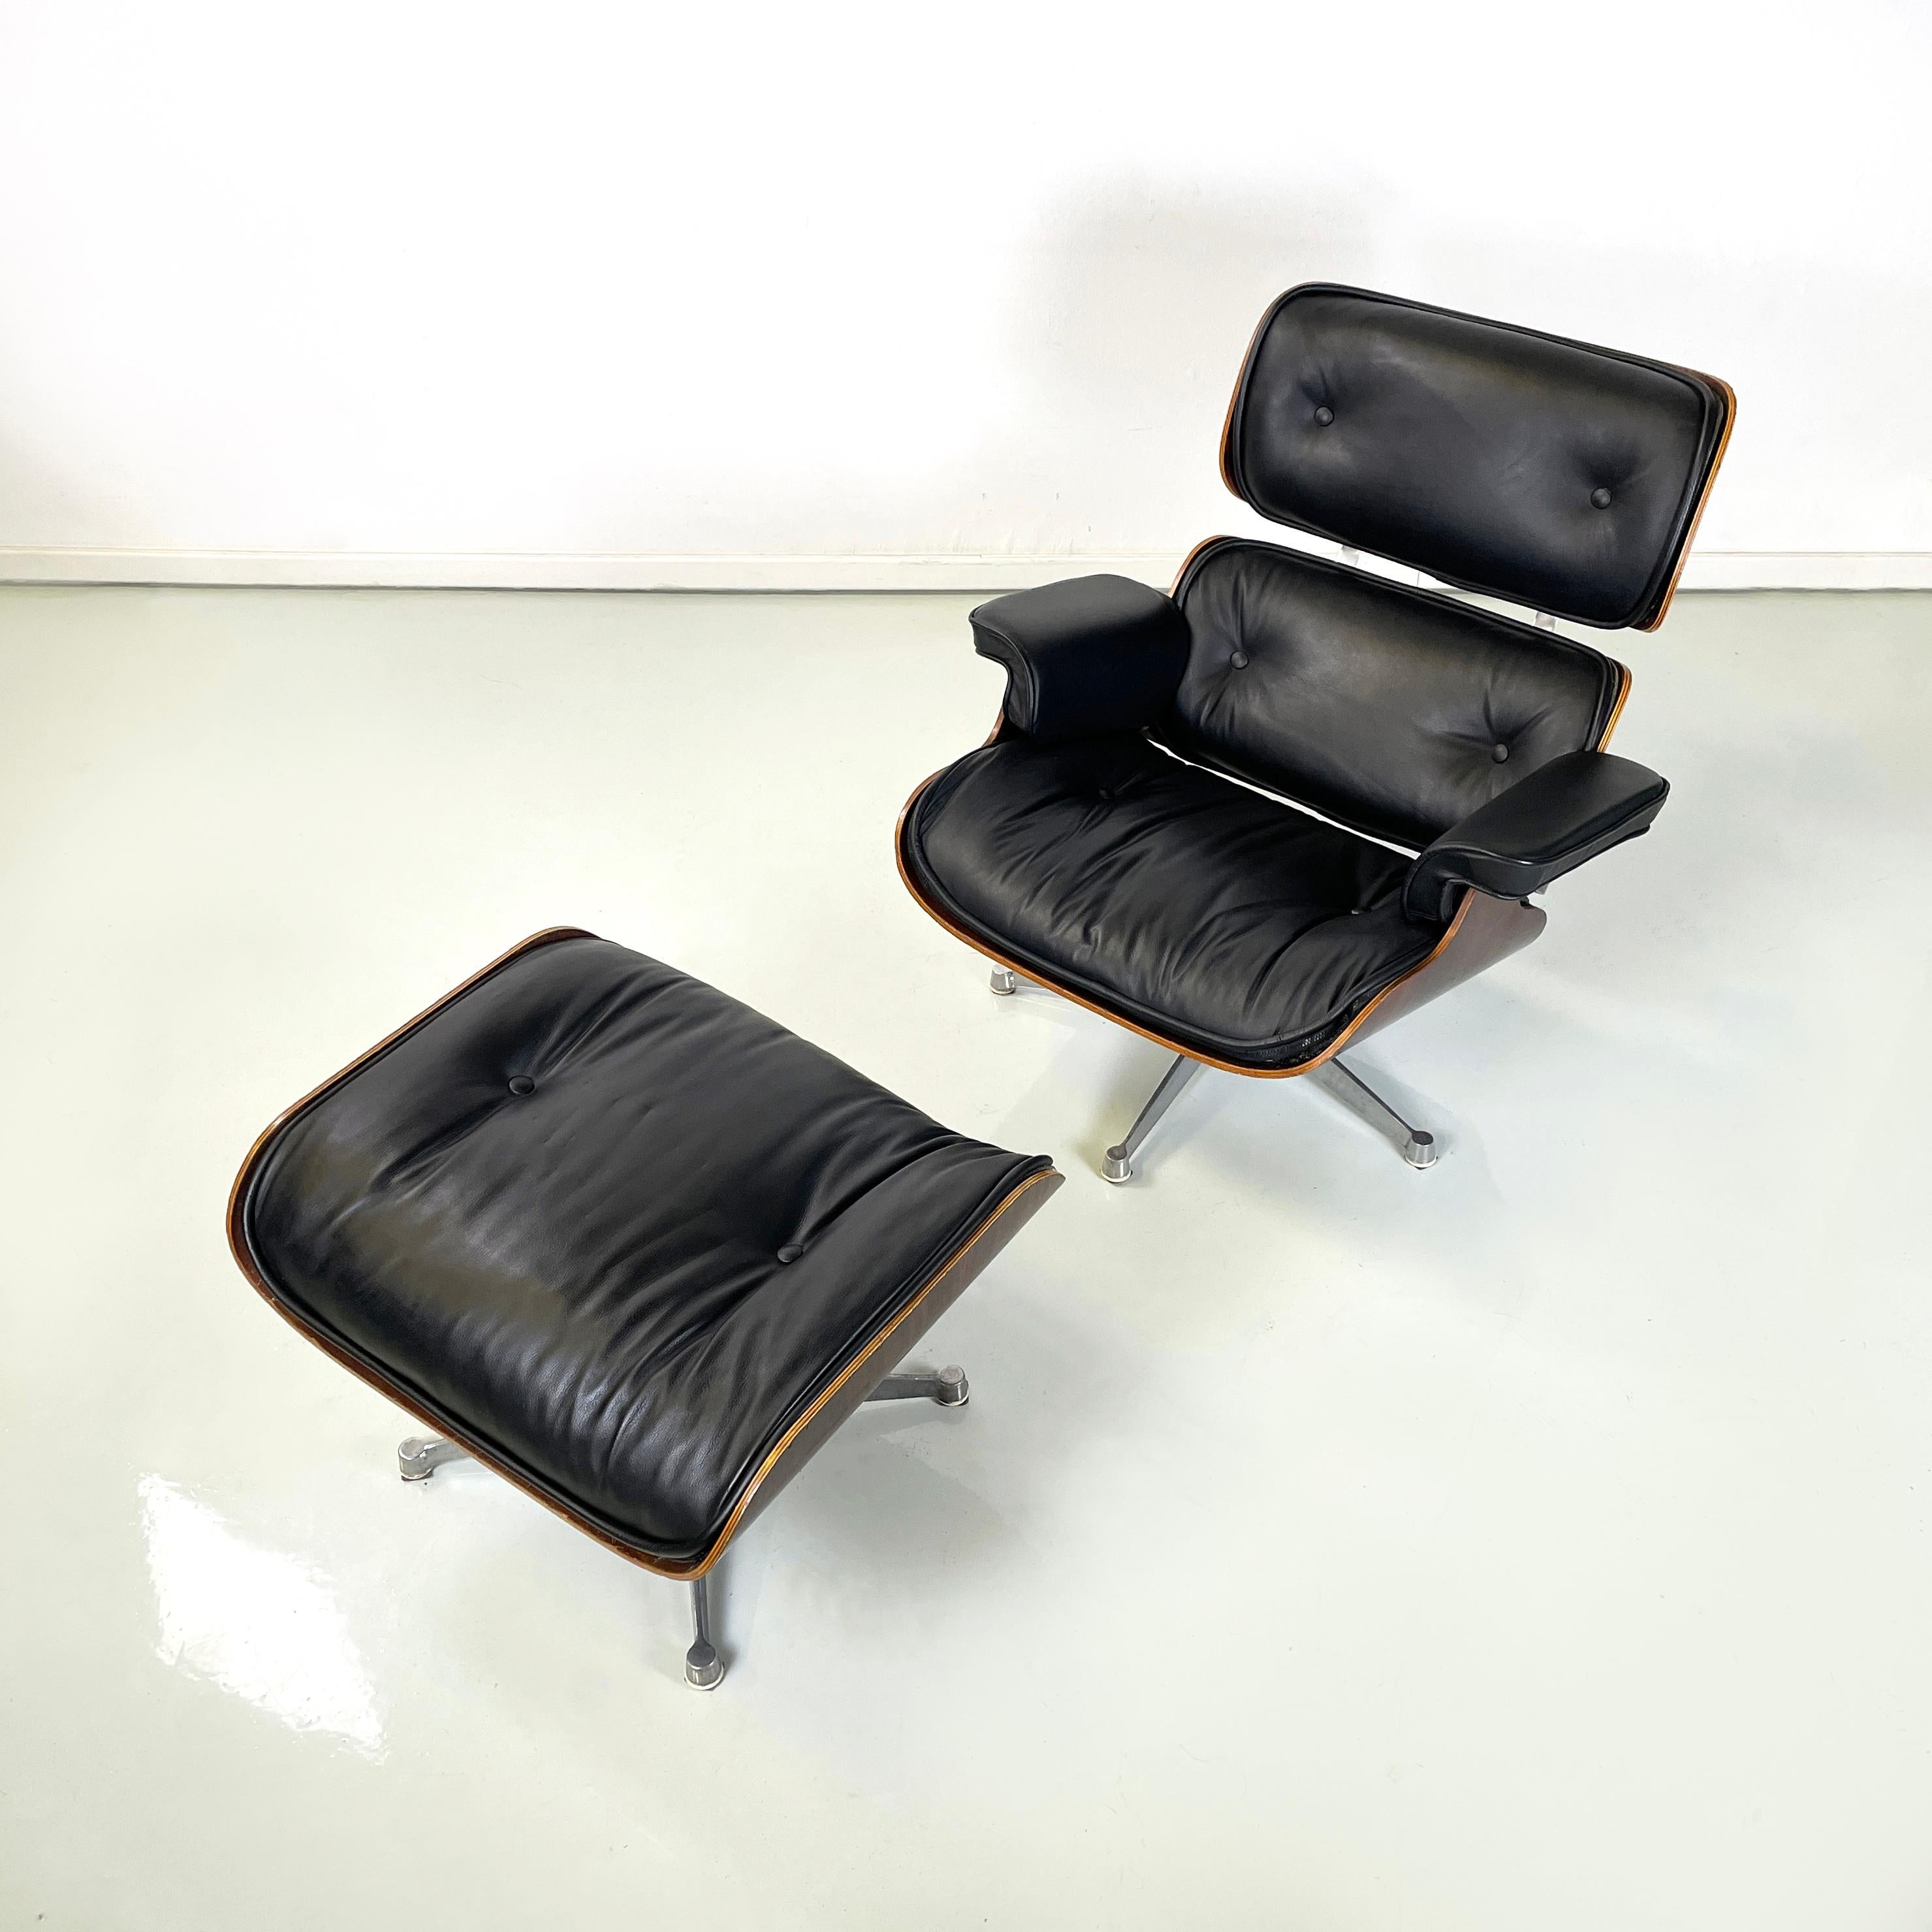 Usa modern Sessel und Ottomane Mod. 670 und 671 von Charles und Ray Eames für Herman Miller, 1970er Jahre
Ikonische und Vintage-Set von Sessel und Ottomane mod. 670 und 671 mit Holzstruktur. Der Sessel besteht aus einem quadratischen Sitz und einer